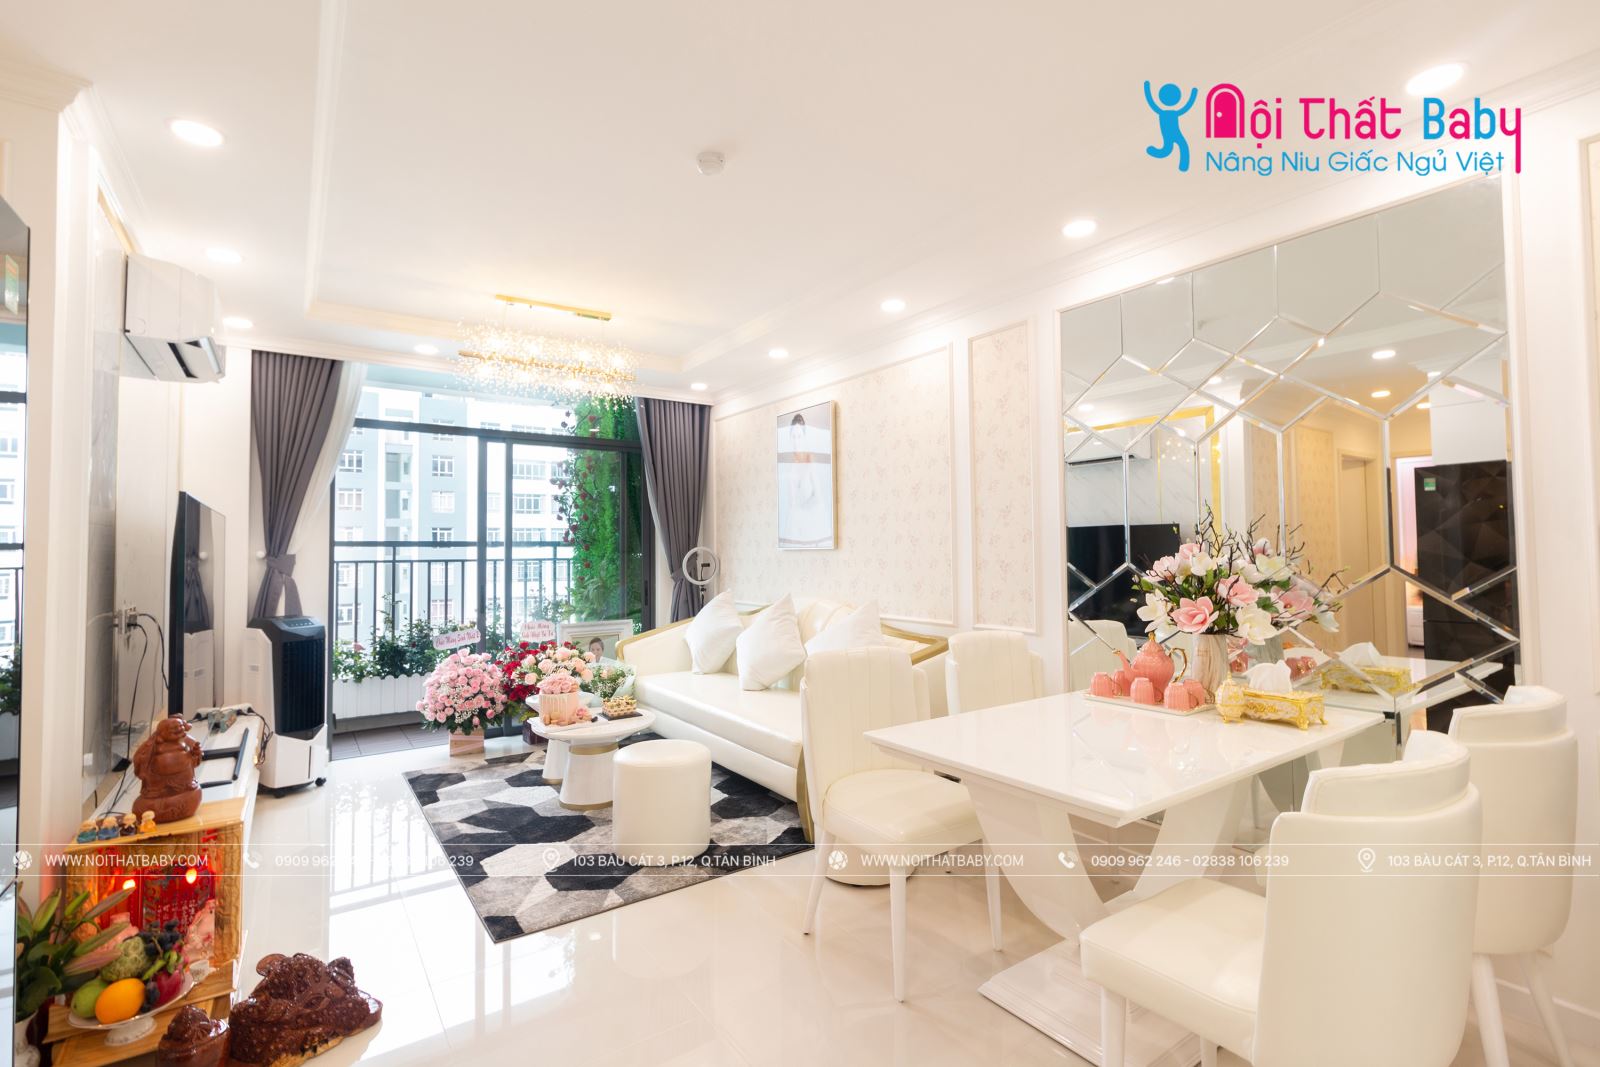 Hình ảnh hoàn thiện thi công nội thất nguyên căn nhà chị Tuyết tại Central Premium Quận 8